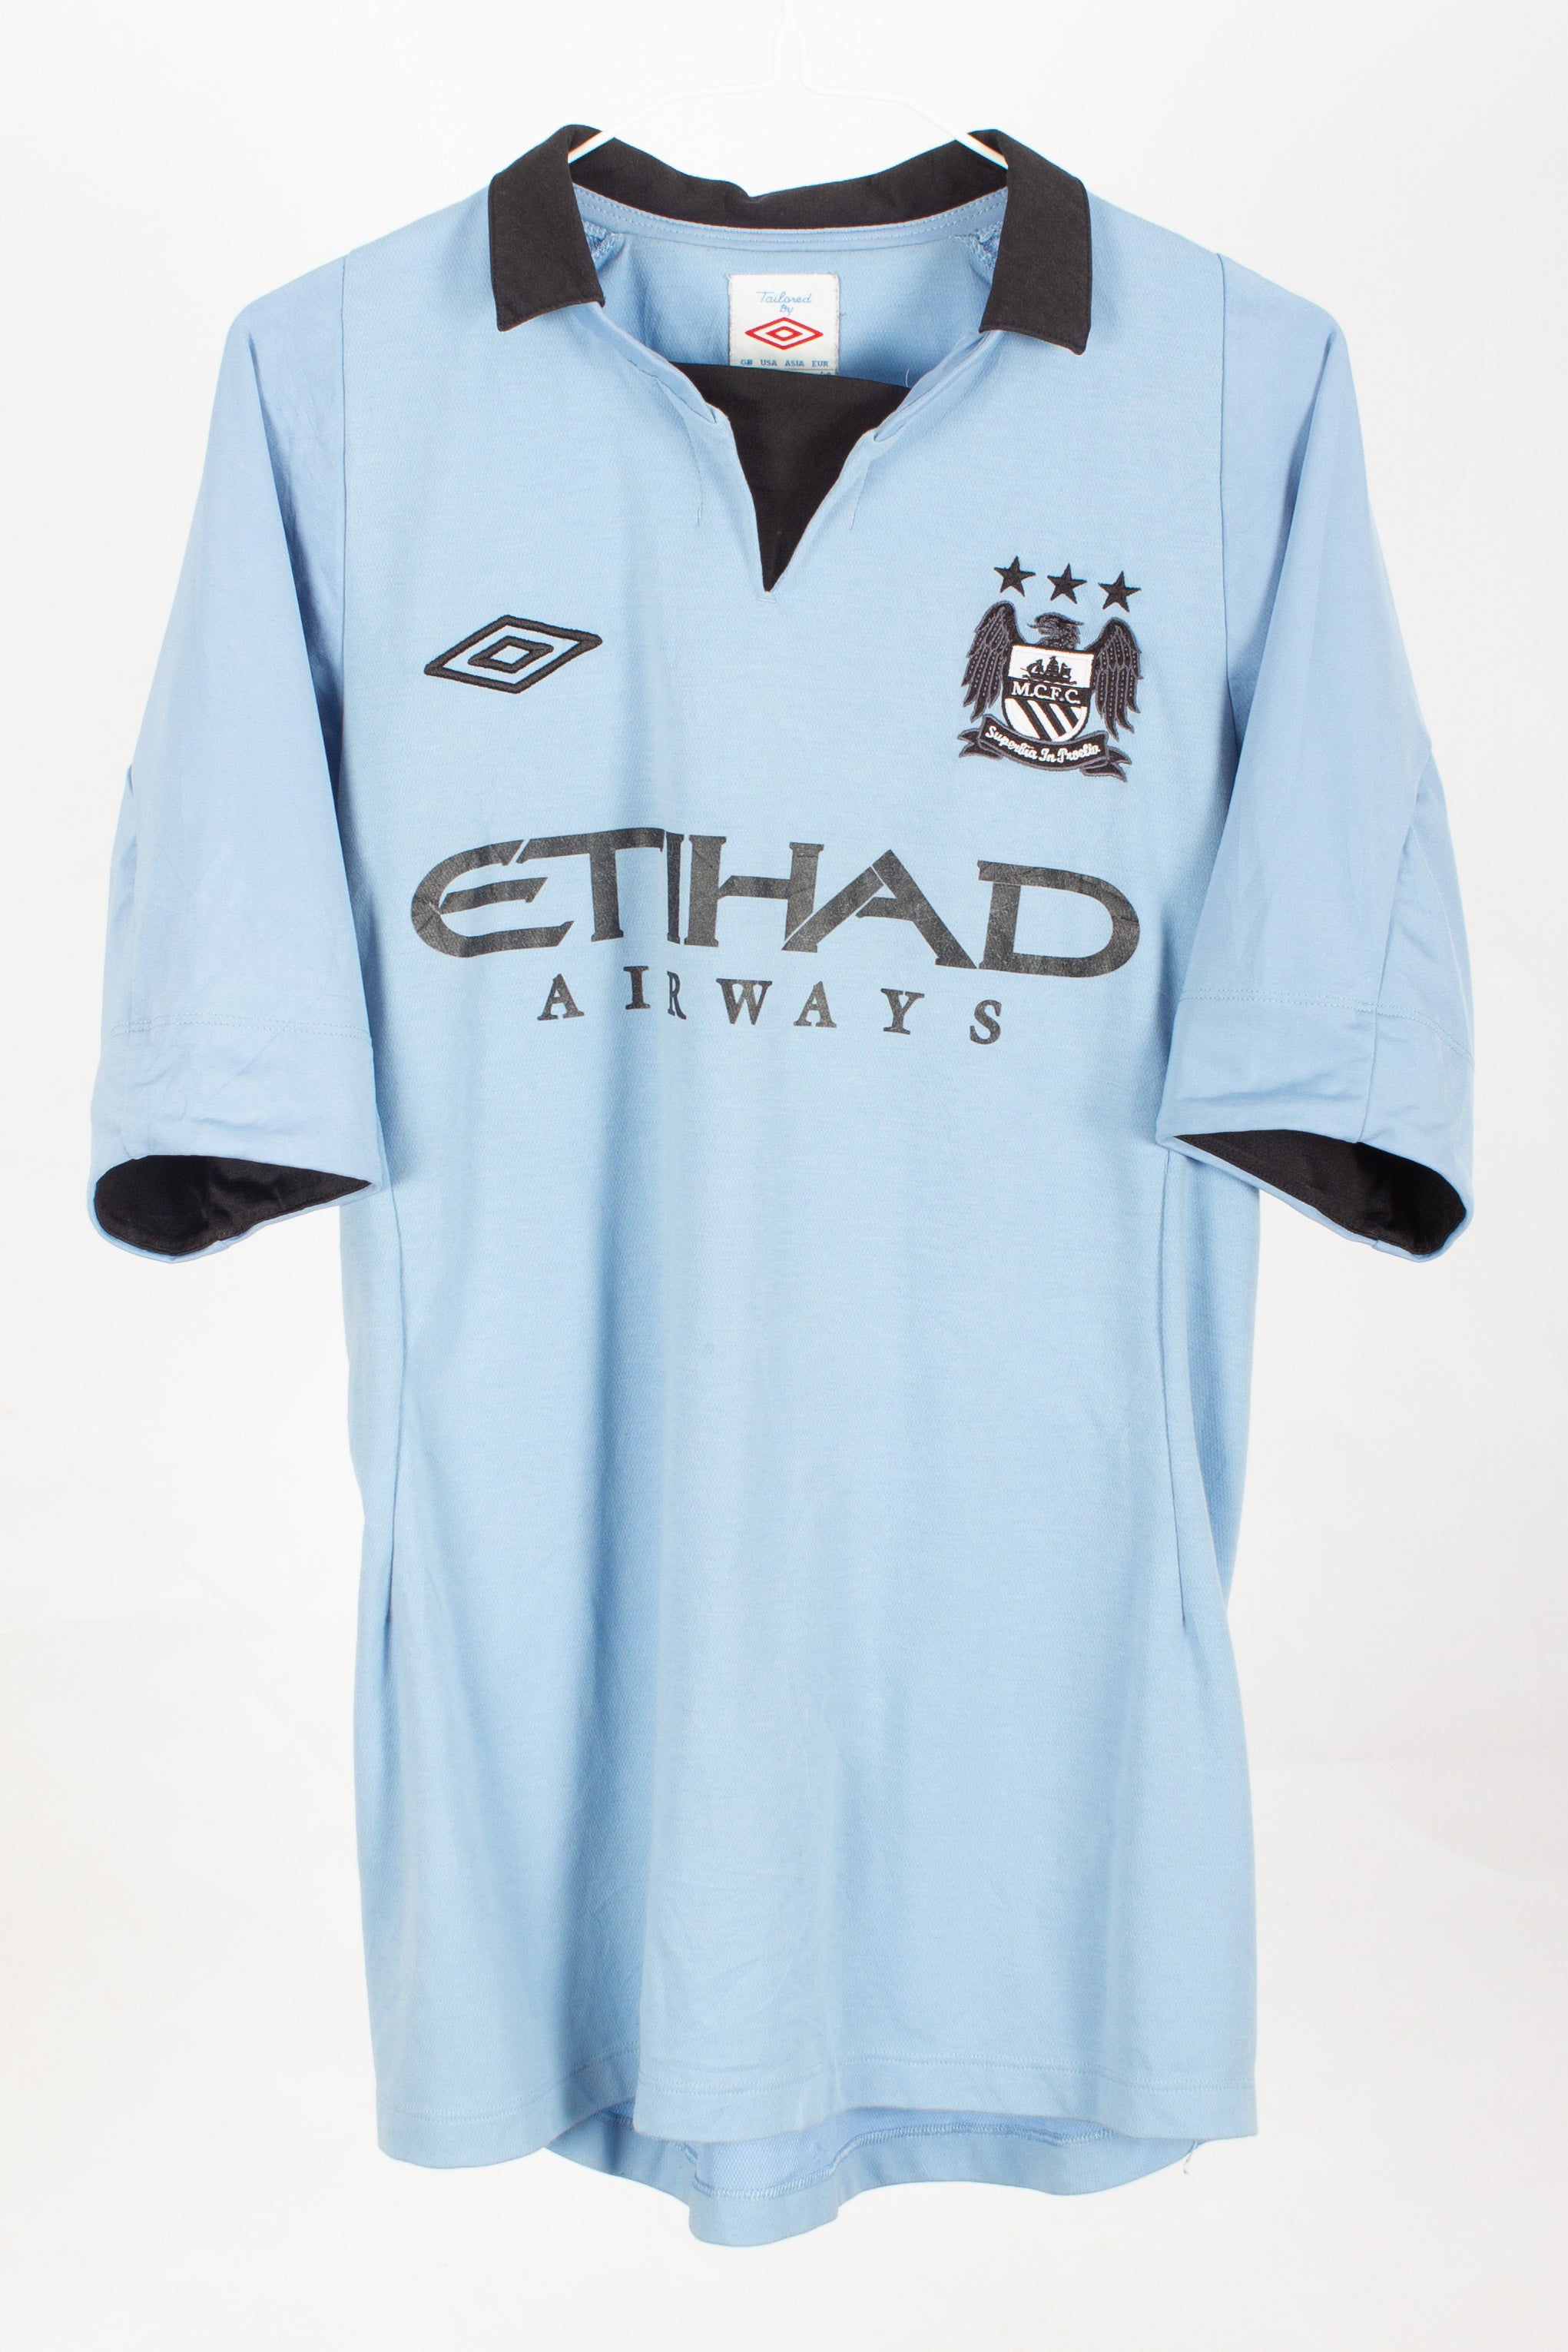 Manchester City 2012/13 Home Shirt (M)